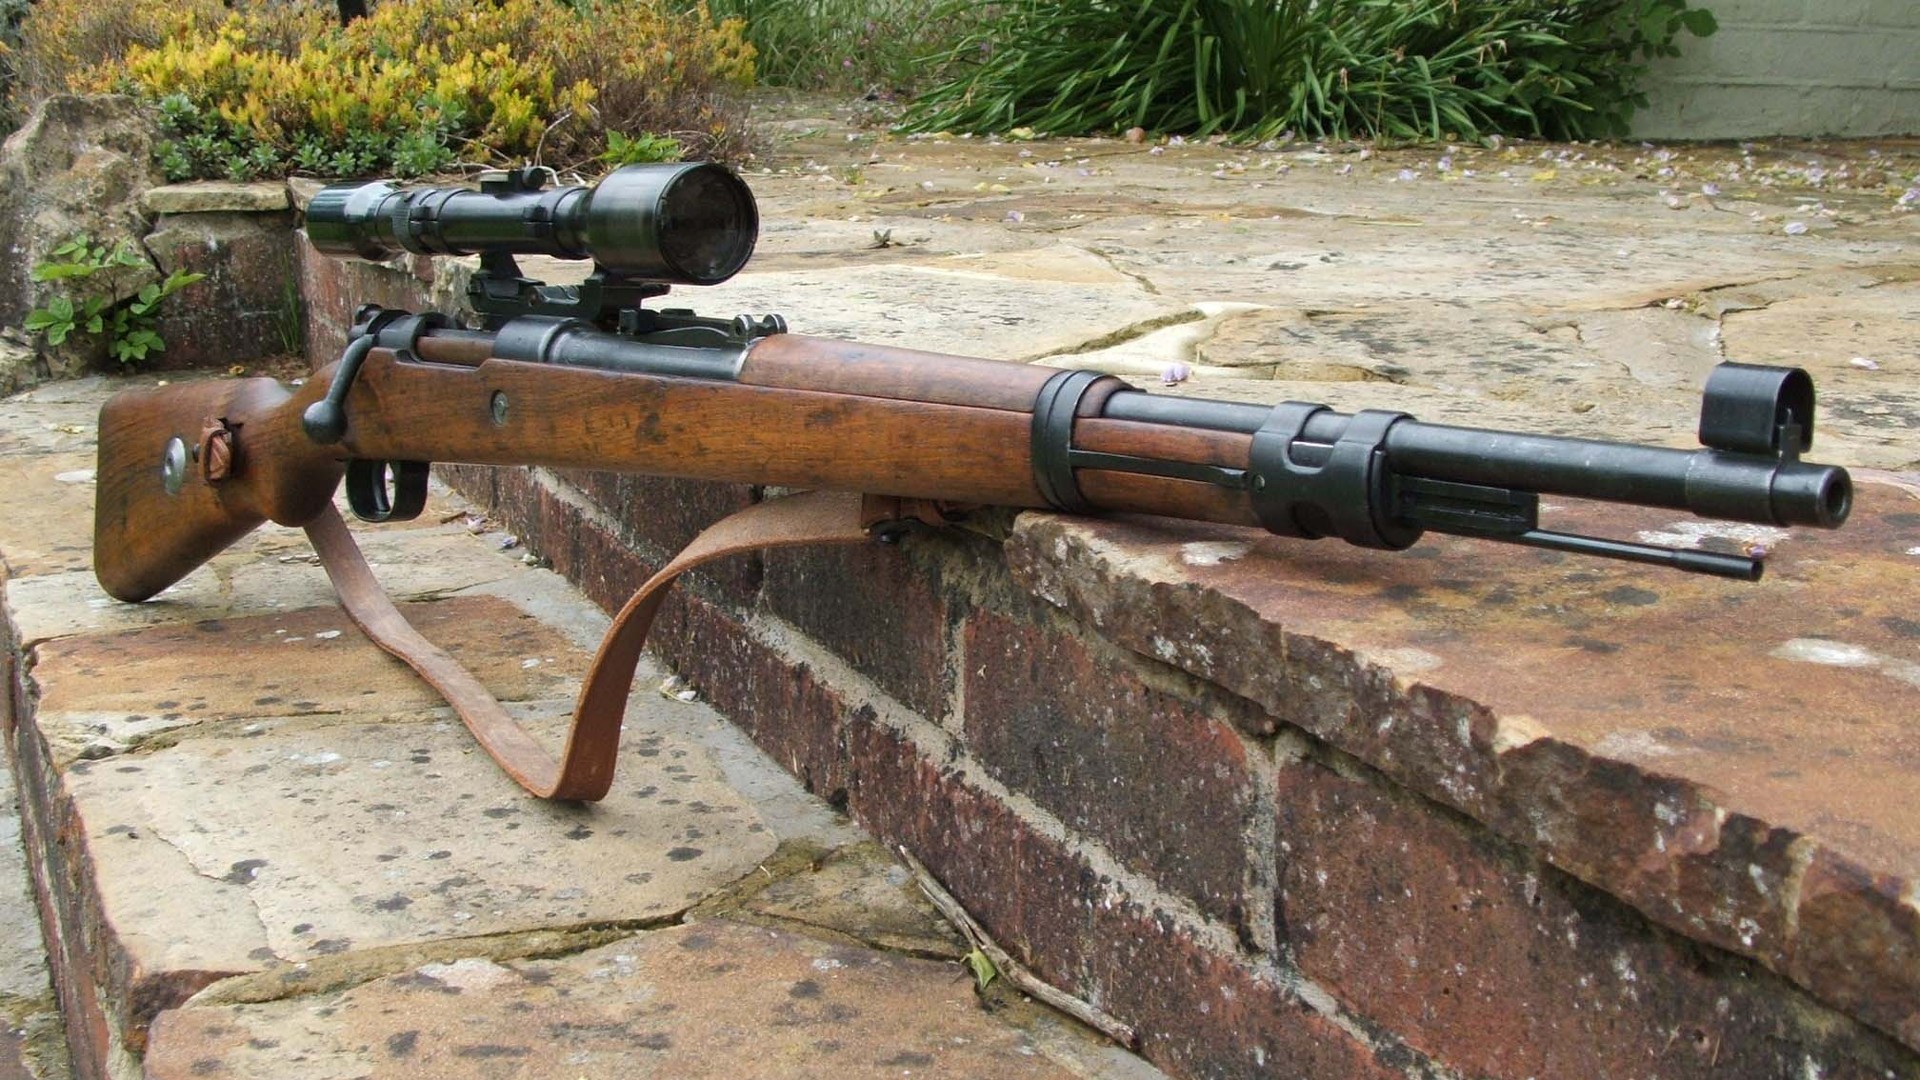 General 1920x1080 rifles Bolt action rifle mauser Mauser Kar98k weapon German firearms gun scopes